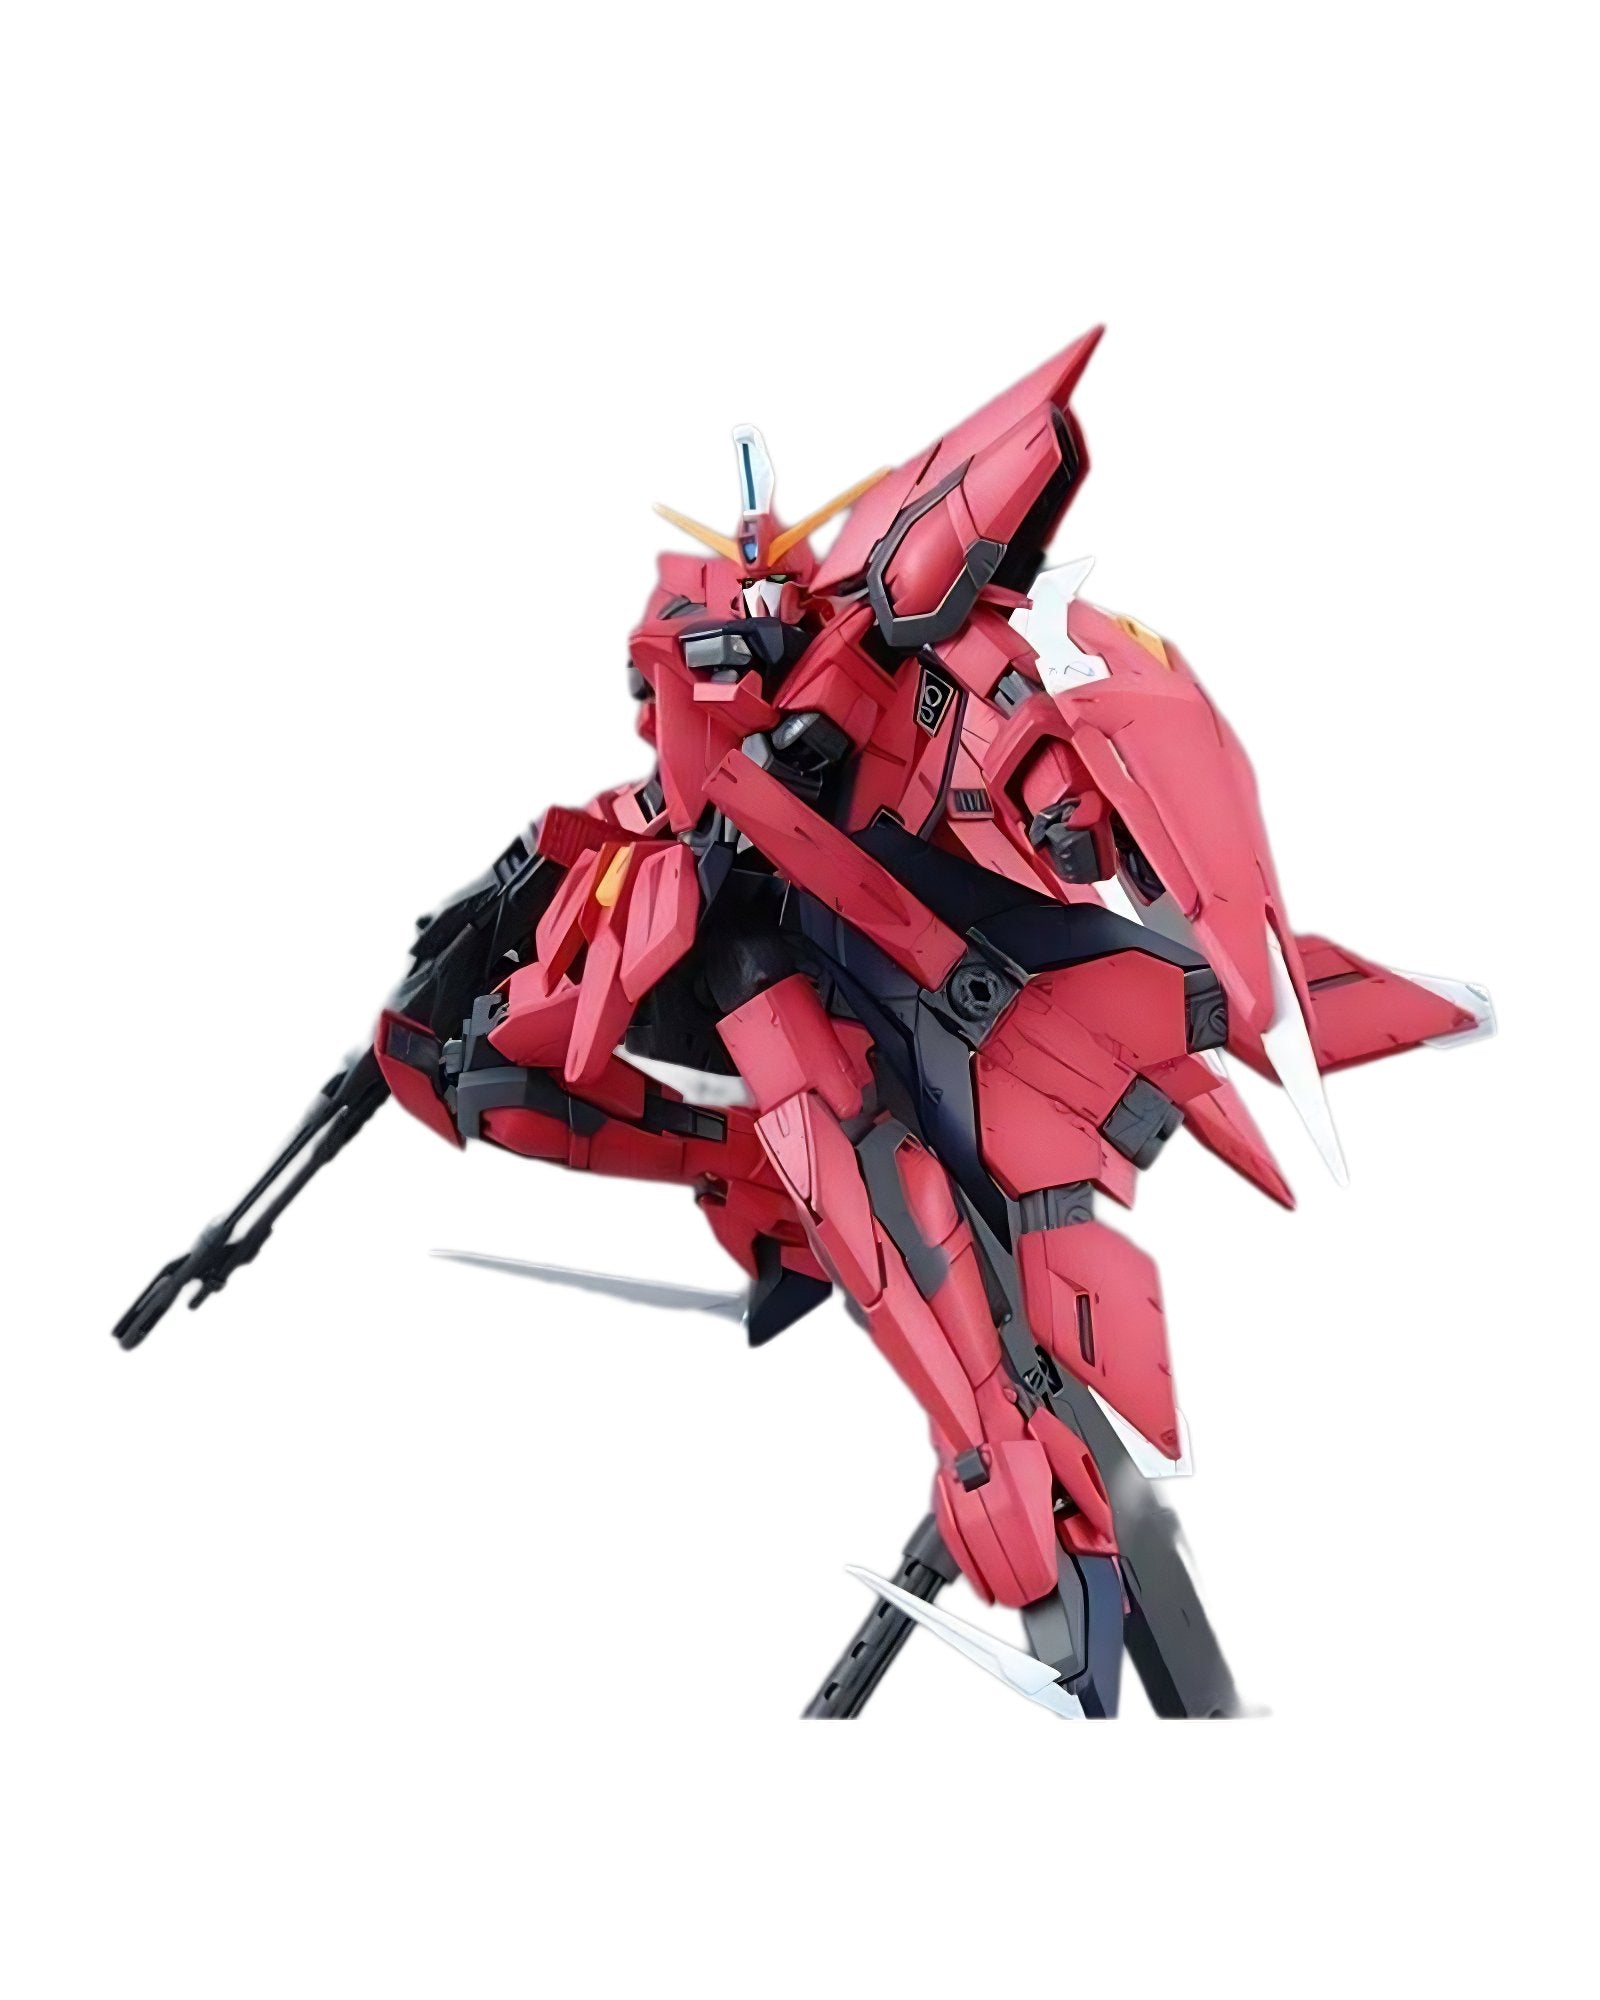 Master Grade Mg 1/100 Gat - X303 Aegis Gundam - TongDa